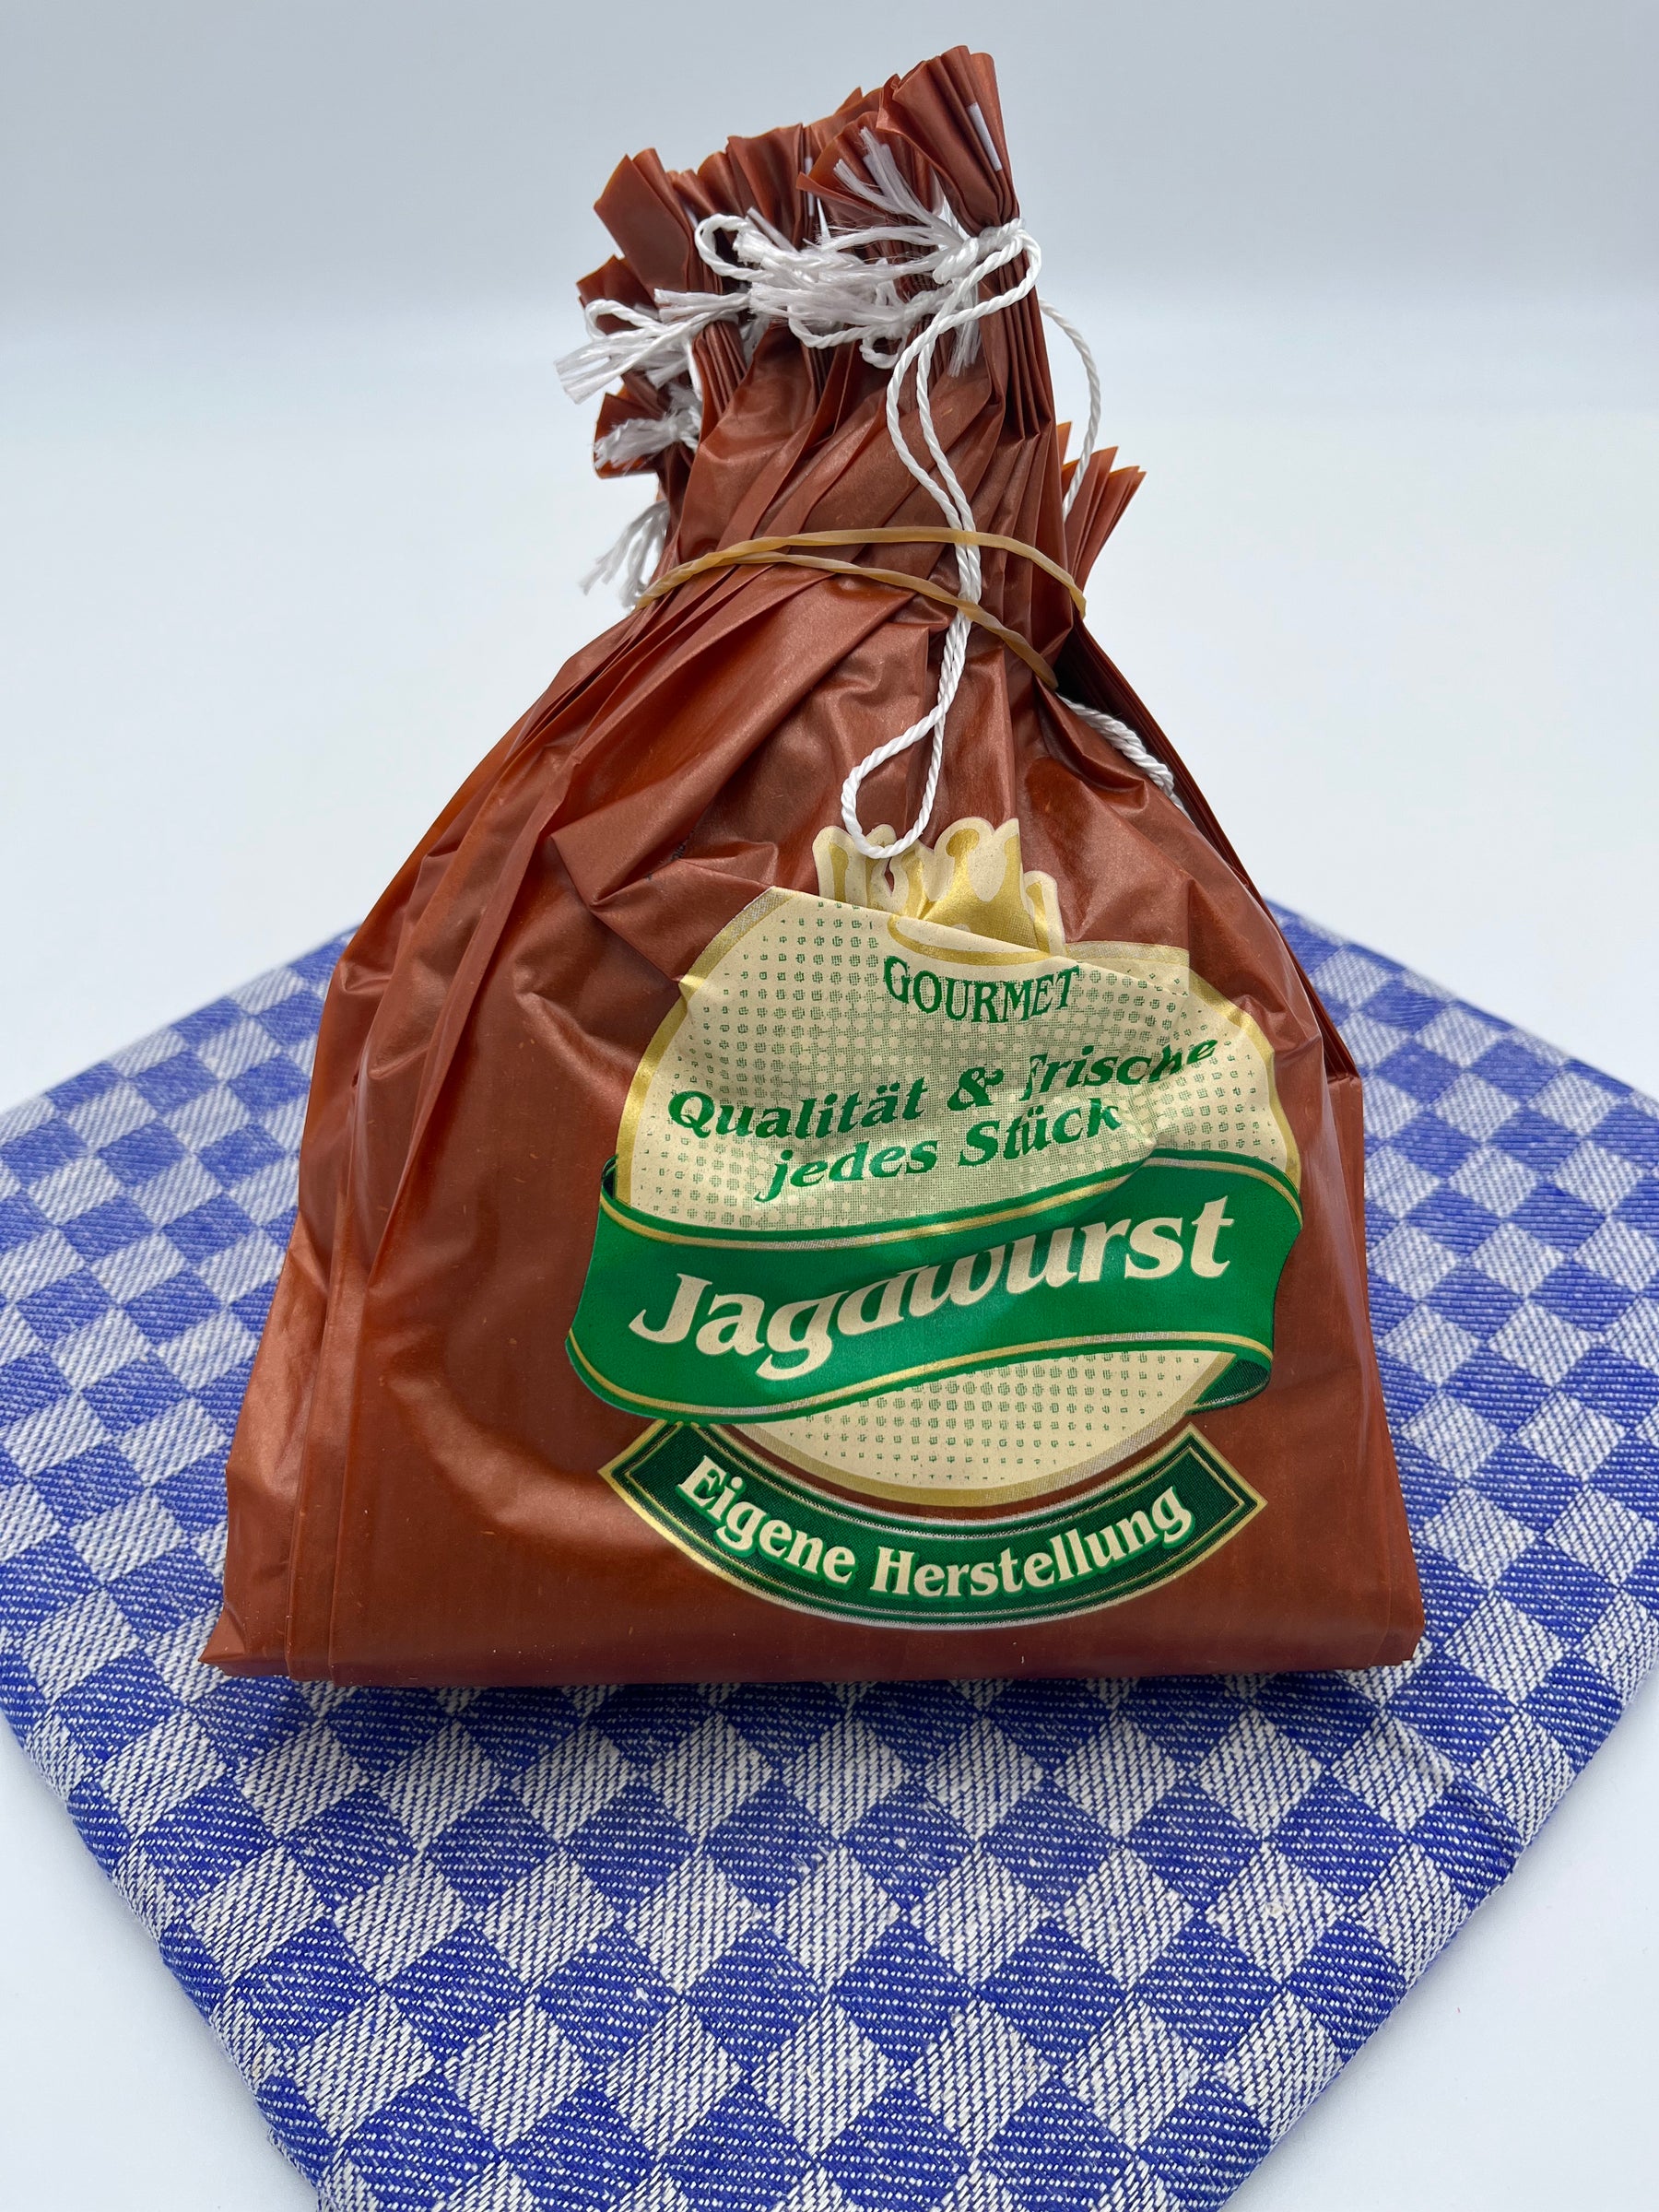 Faserdarm Jagdwurst